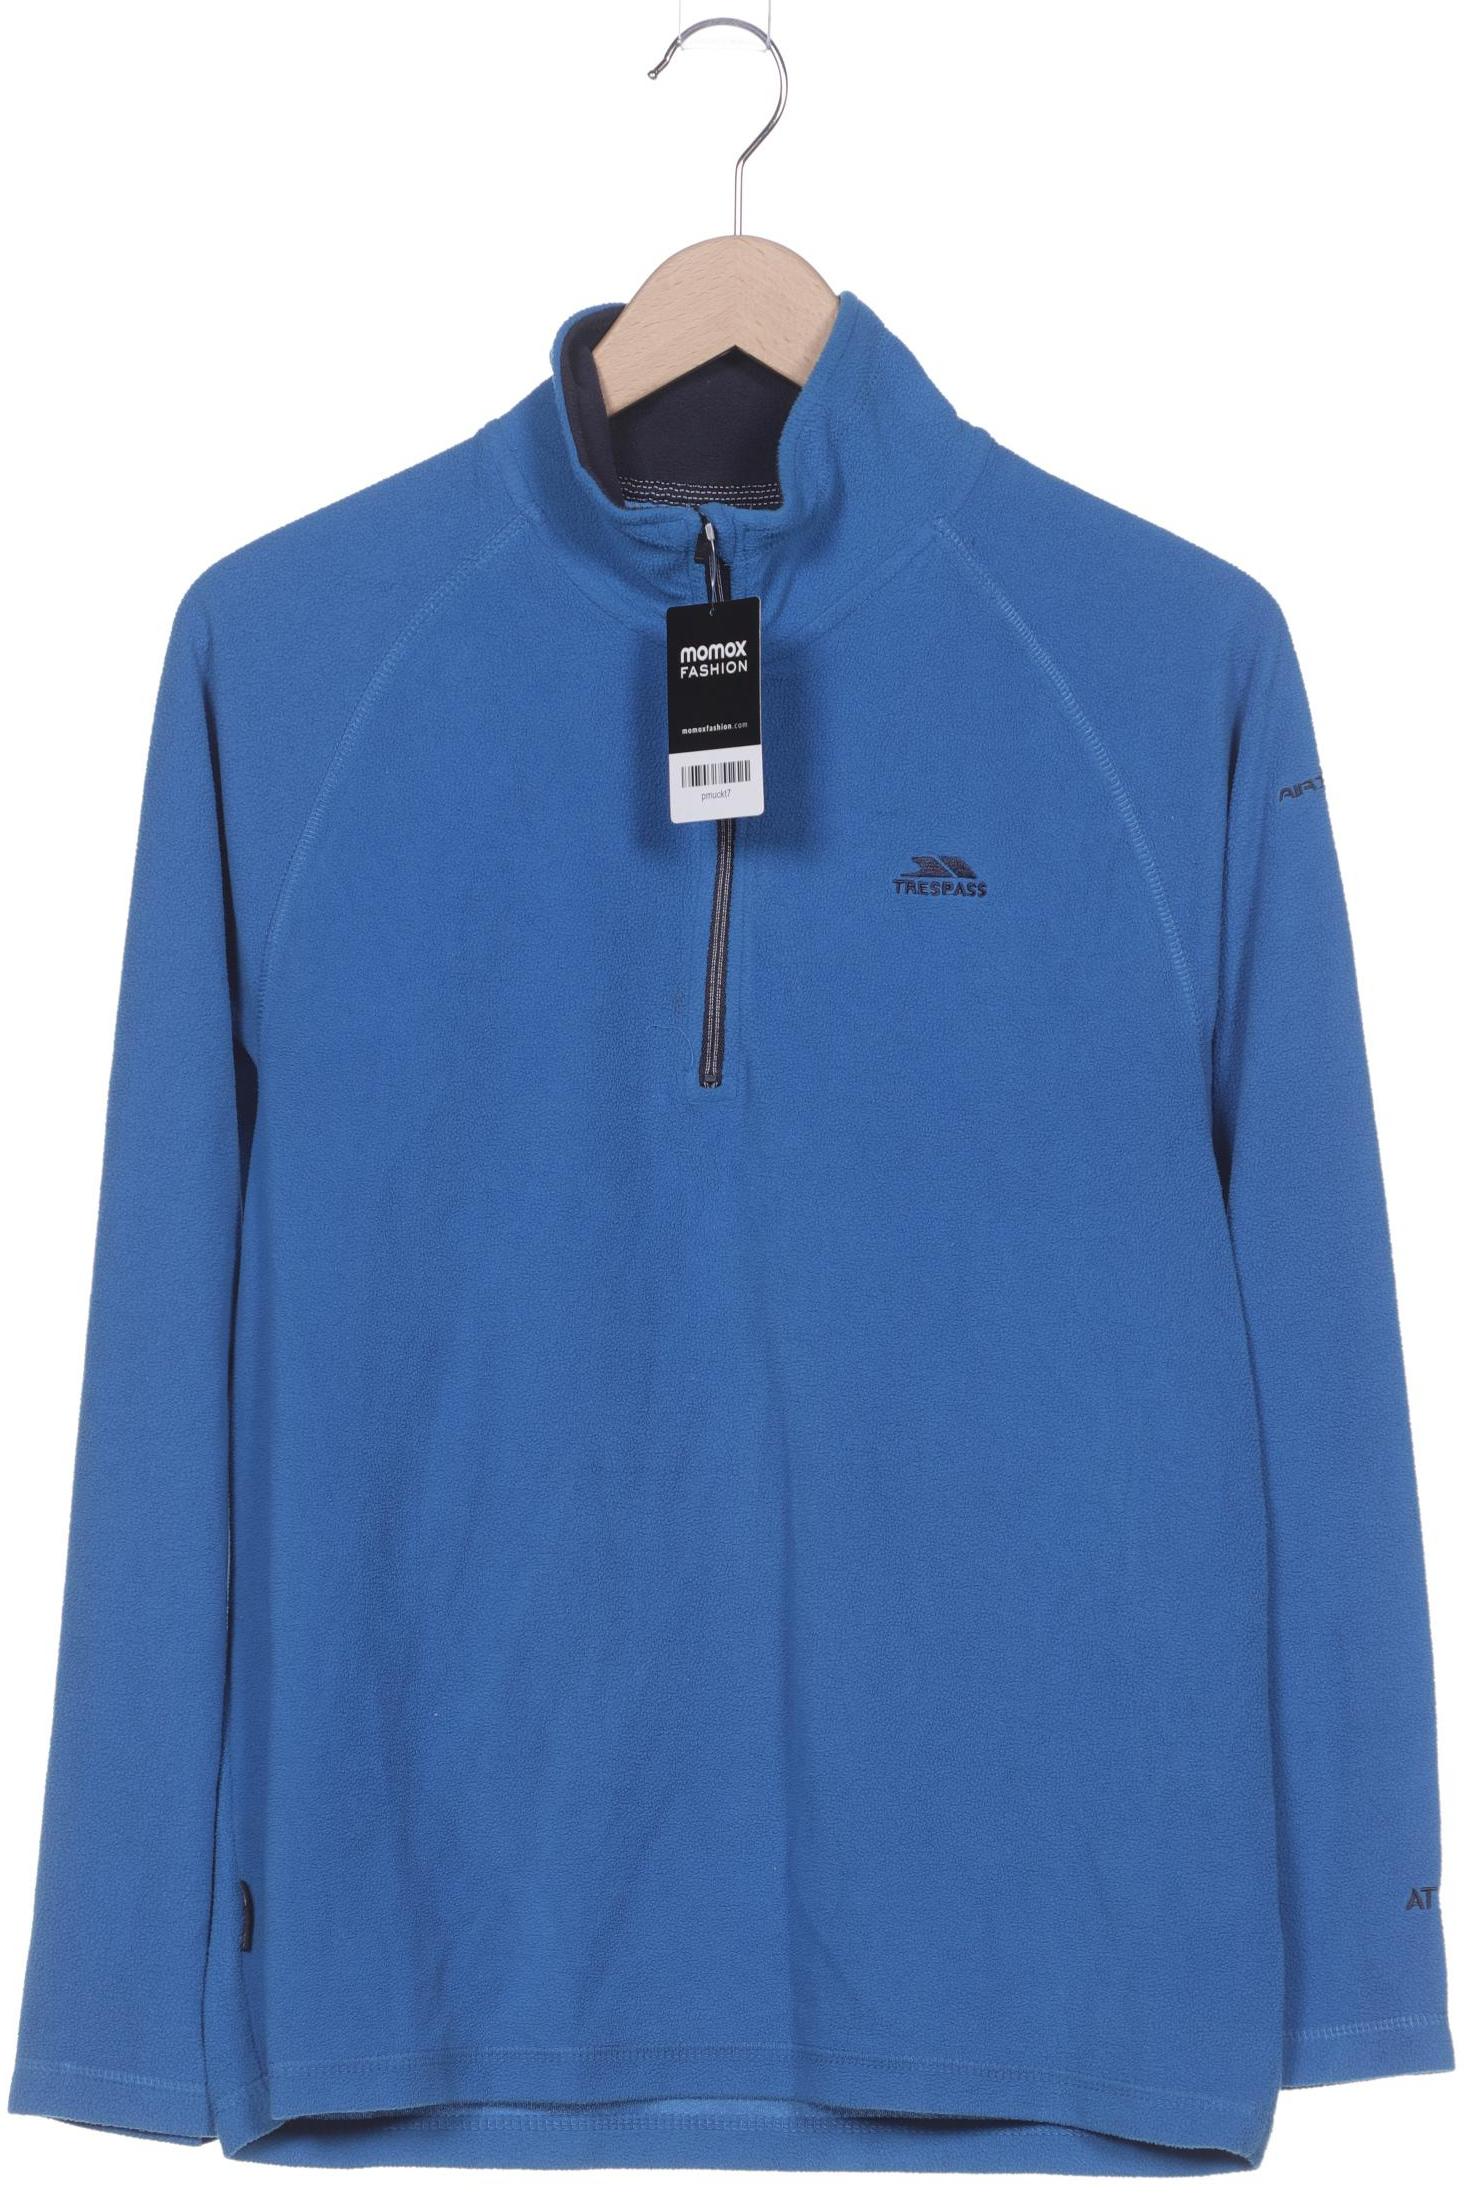 Trespass Herren Sweatshirt, blau, Gr. 48 von Trespass